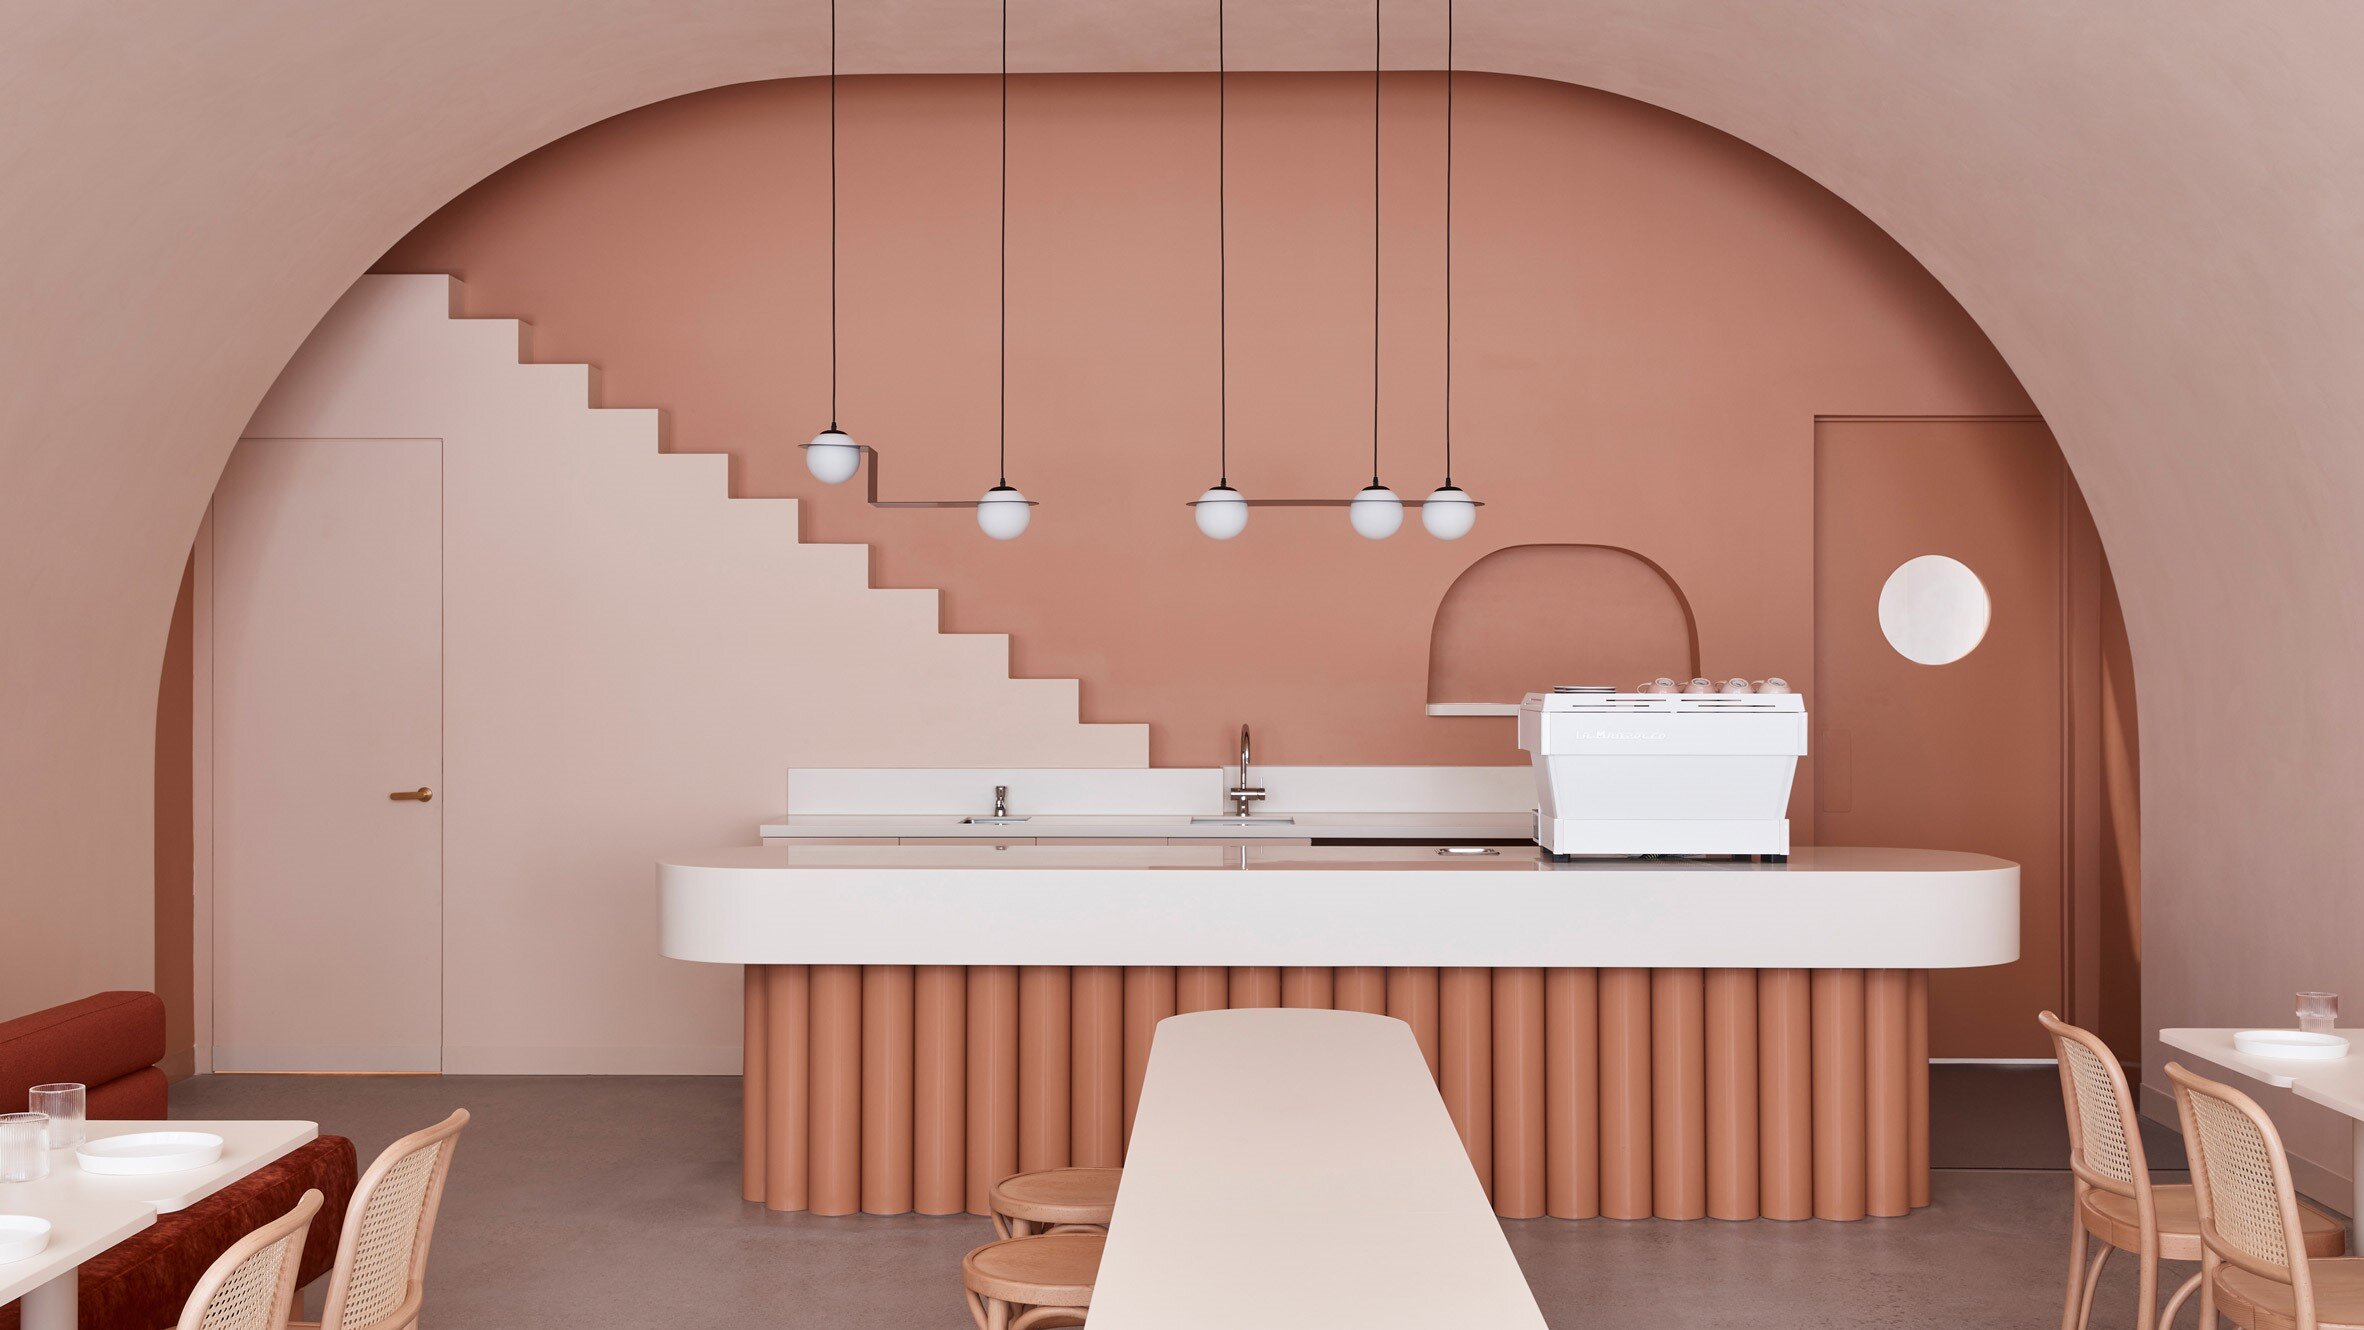 The Budapest Cafe, Biasol Design